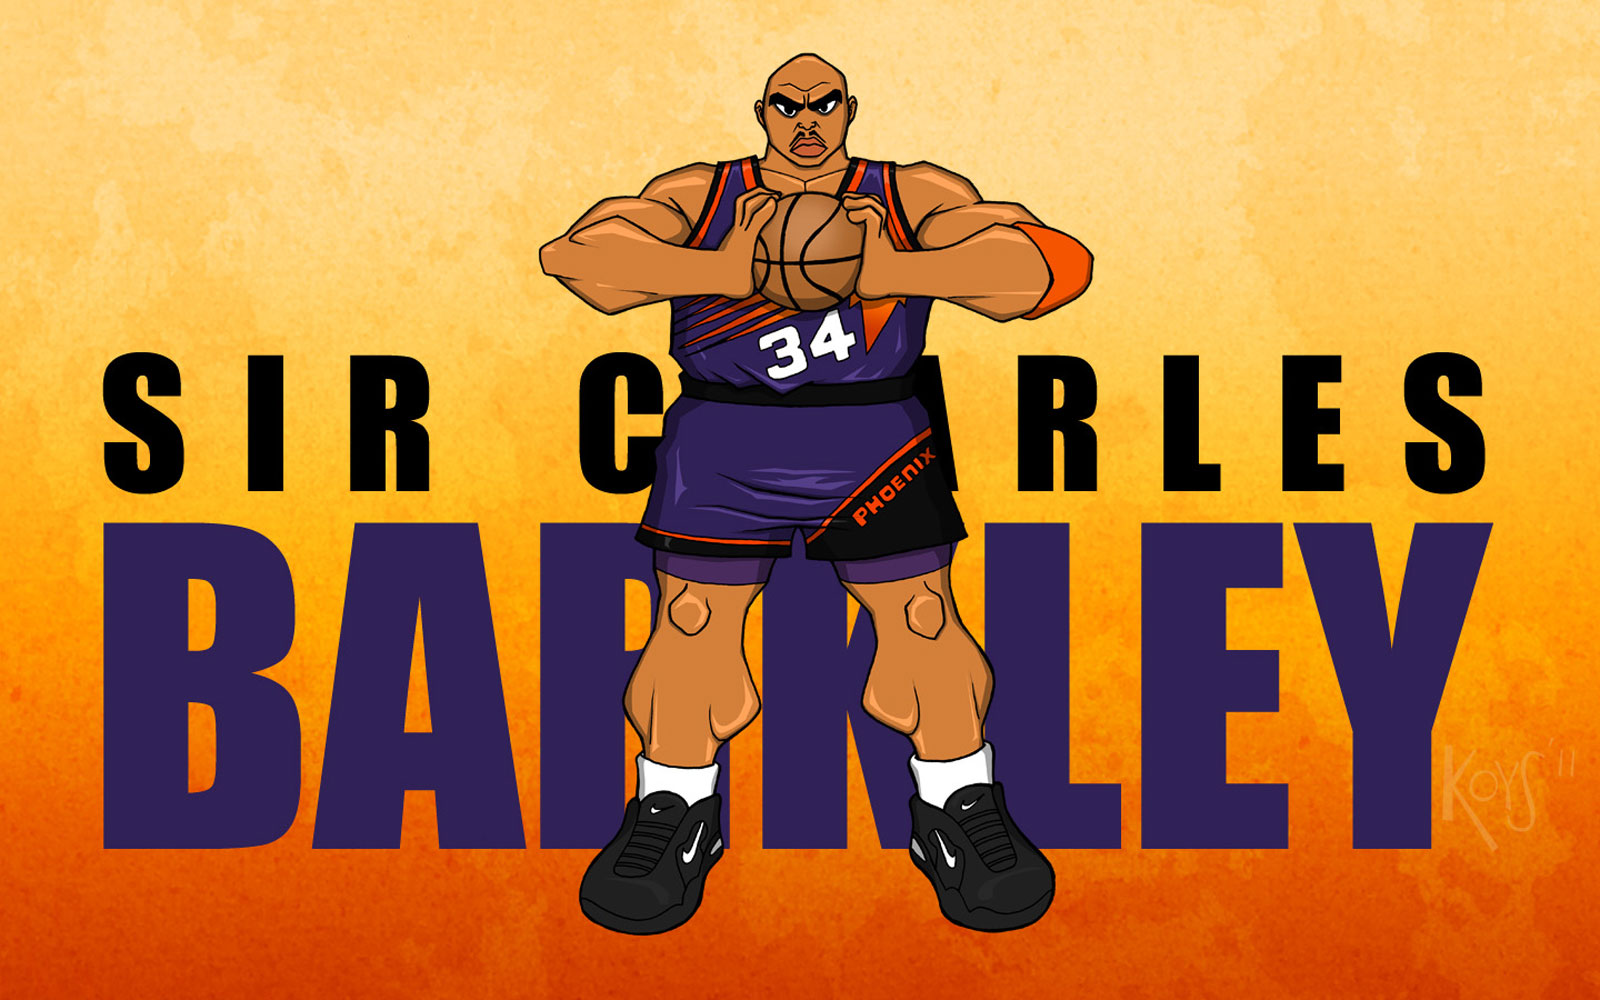 Charles Barkley Wallpaper Basketball At